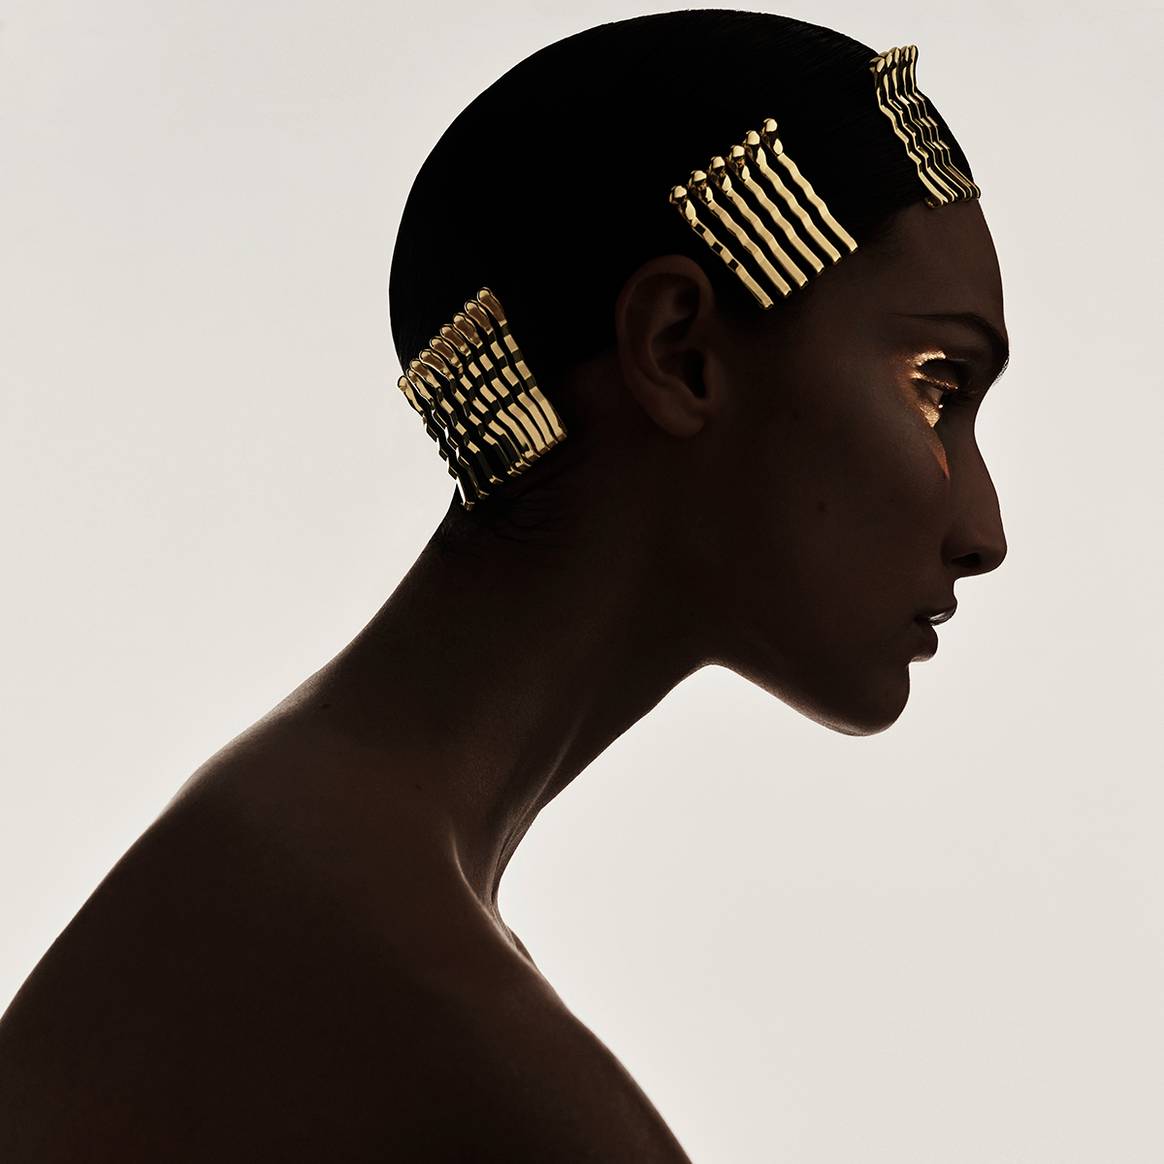 Colección cápsula “Glitter in Gold” de la nueva línea “Zara Hair” de “Zara Beauty”, desarrollada junto al estilista Guido Palau. Fotografía de campaña.